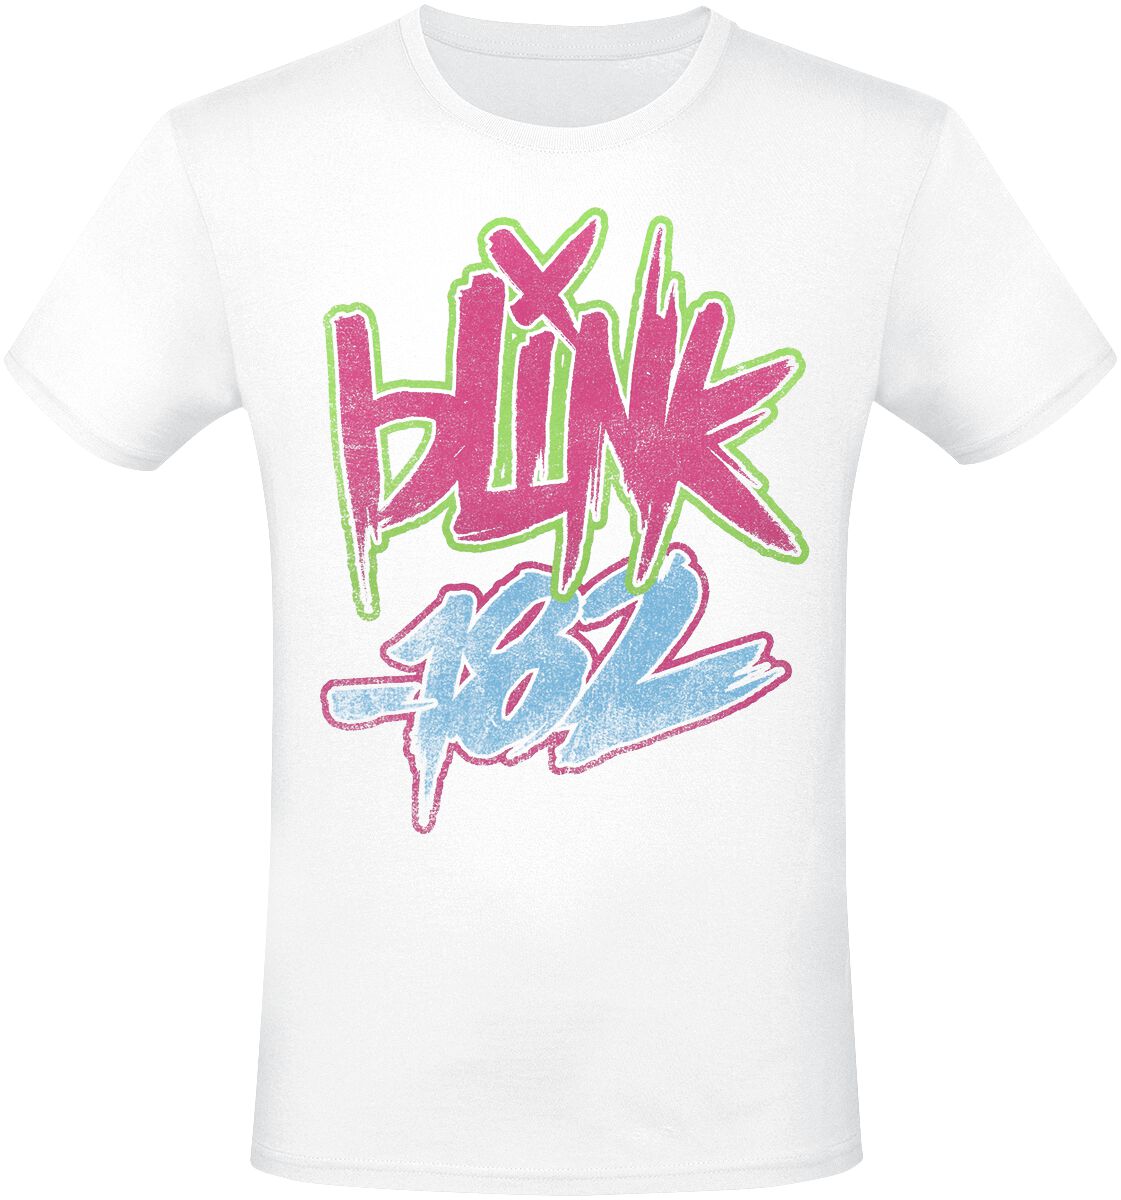 Blink-182 T-Shirt - Text - S bis 3XL - für Männer - Größe L - weiß  - Lizenziertes Merchandise!